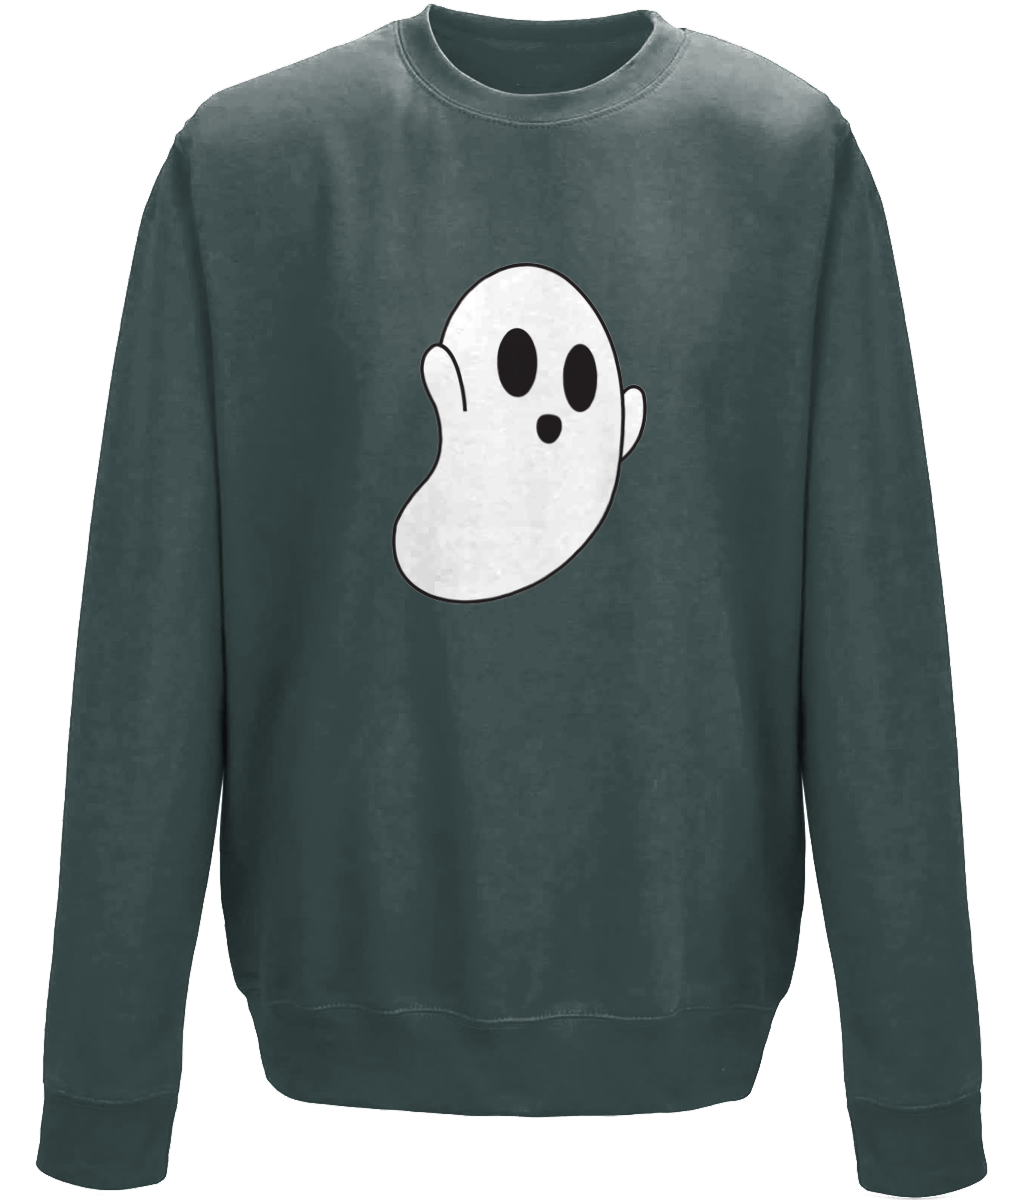 Ghost Kids Sweatshirt